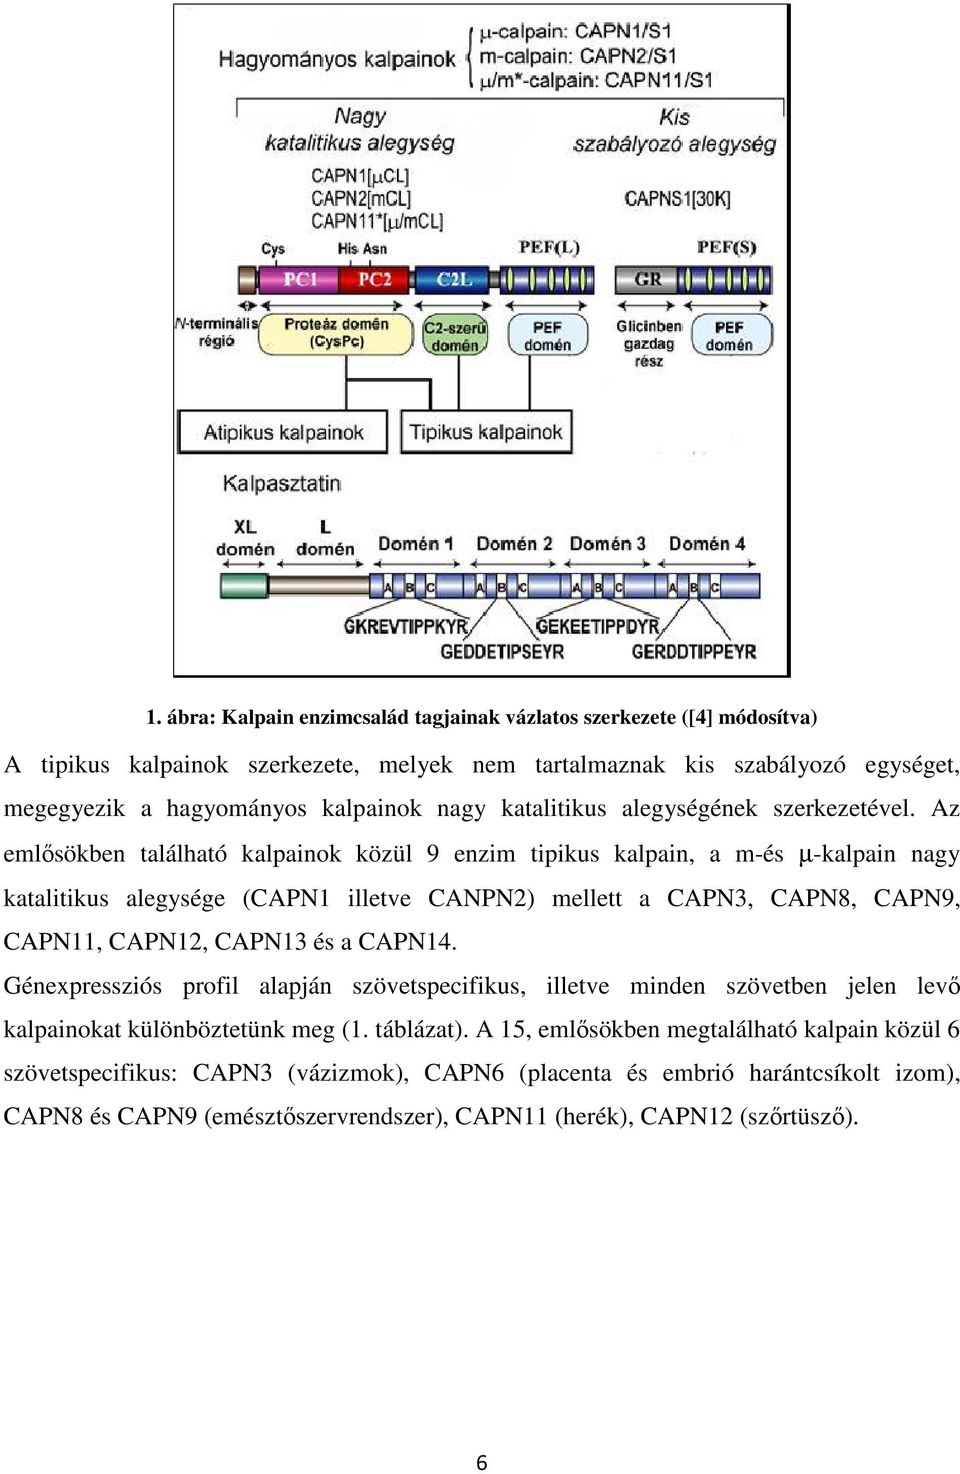 Az emlősökben található kalpainok közül 9 enzim tipikus kalpain, a m-és µ-kalpain nagy katalitikus alegysége (CAPN1 illetve CANPN2) mellett a CAPN3, CAPN8, CAPN9, CAPN11, CAPN12, CAPN13 és a